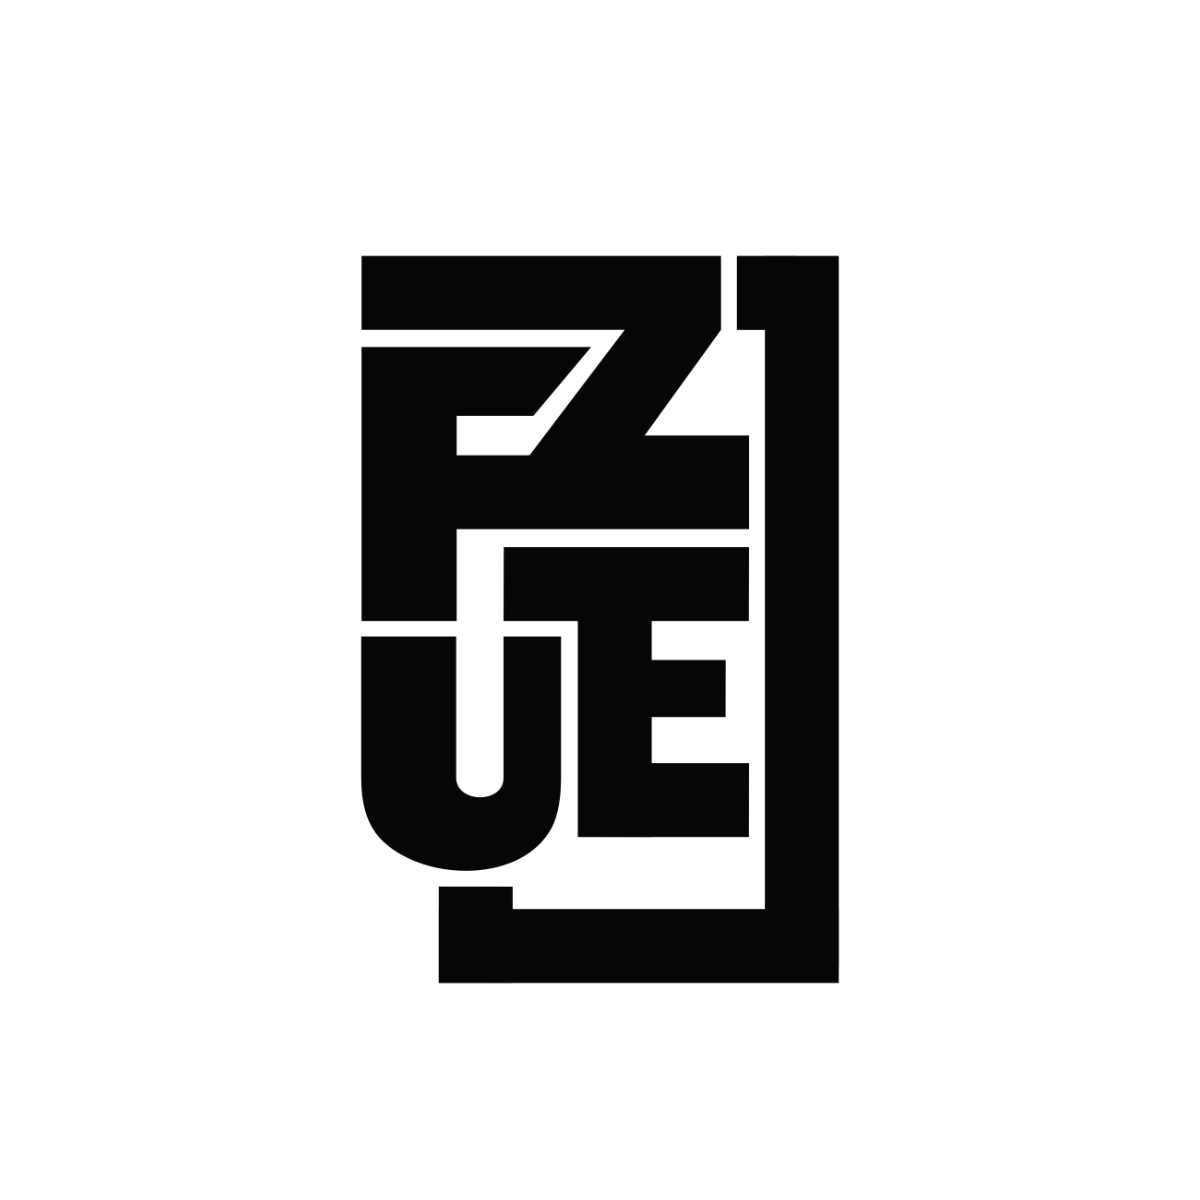 fuze clan logo